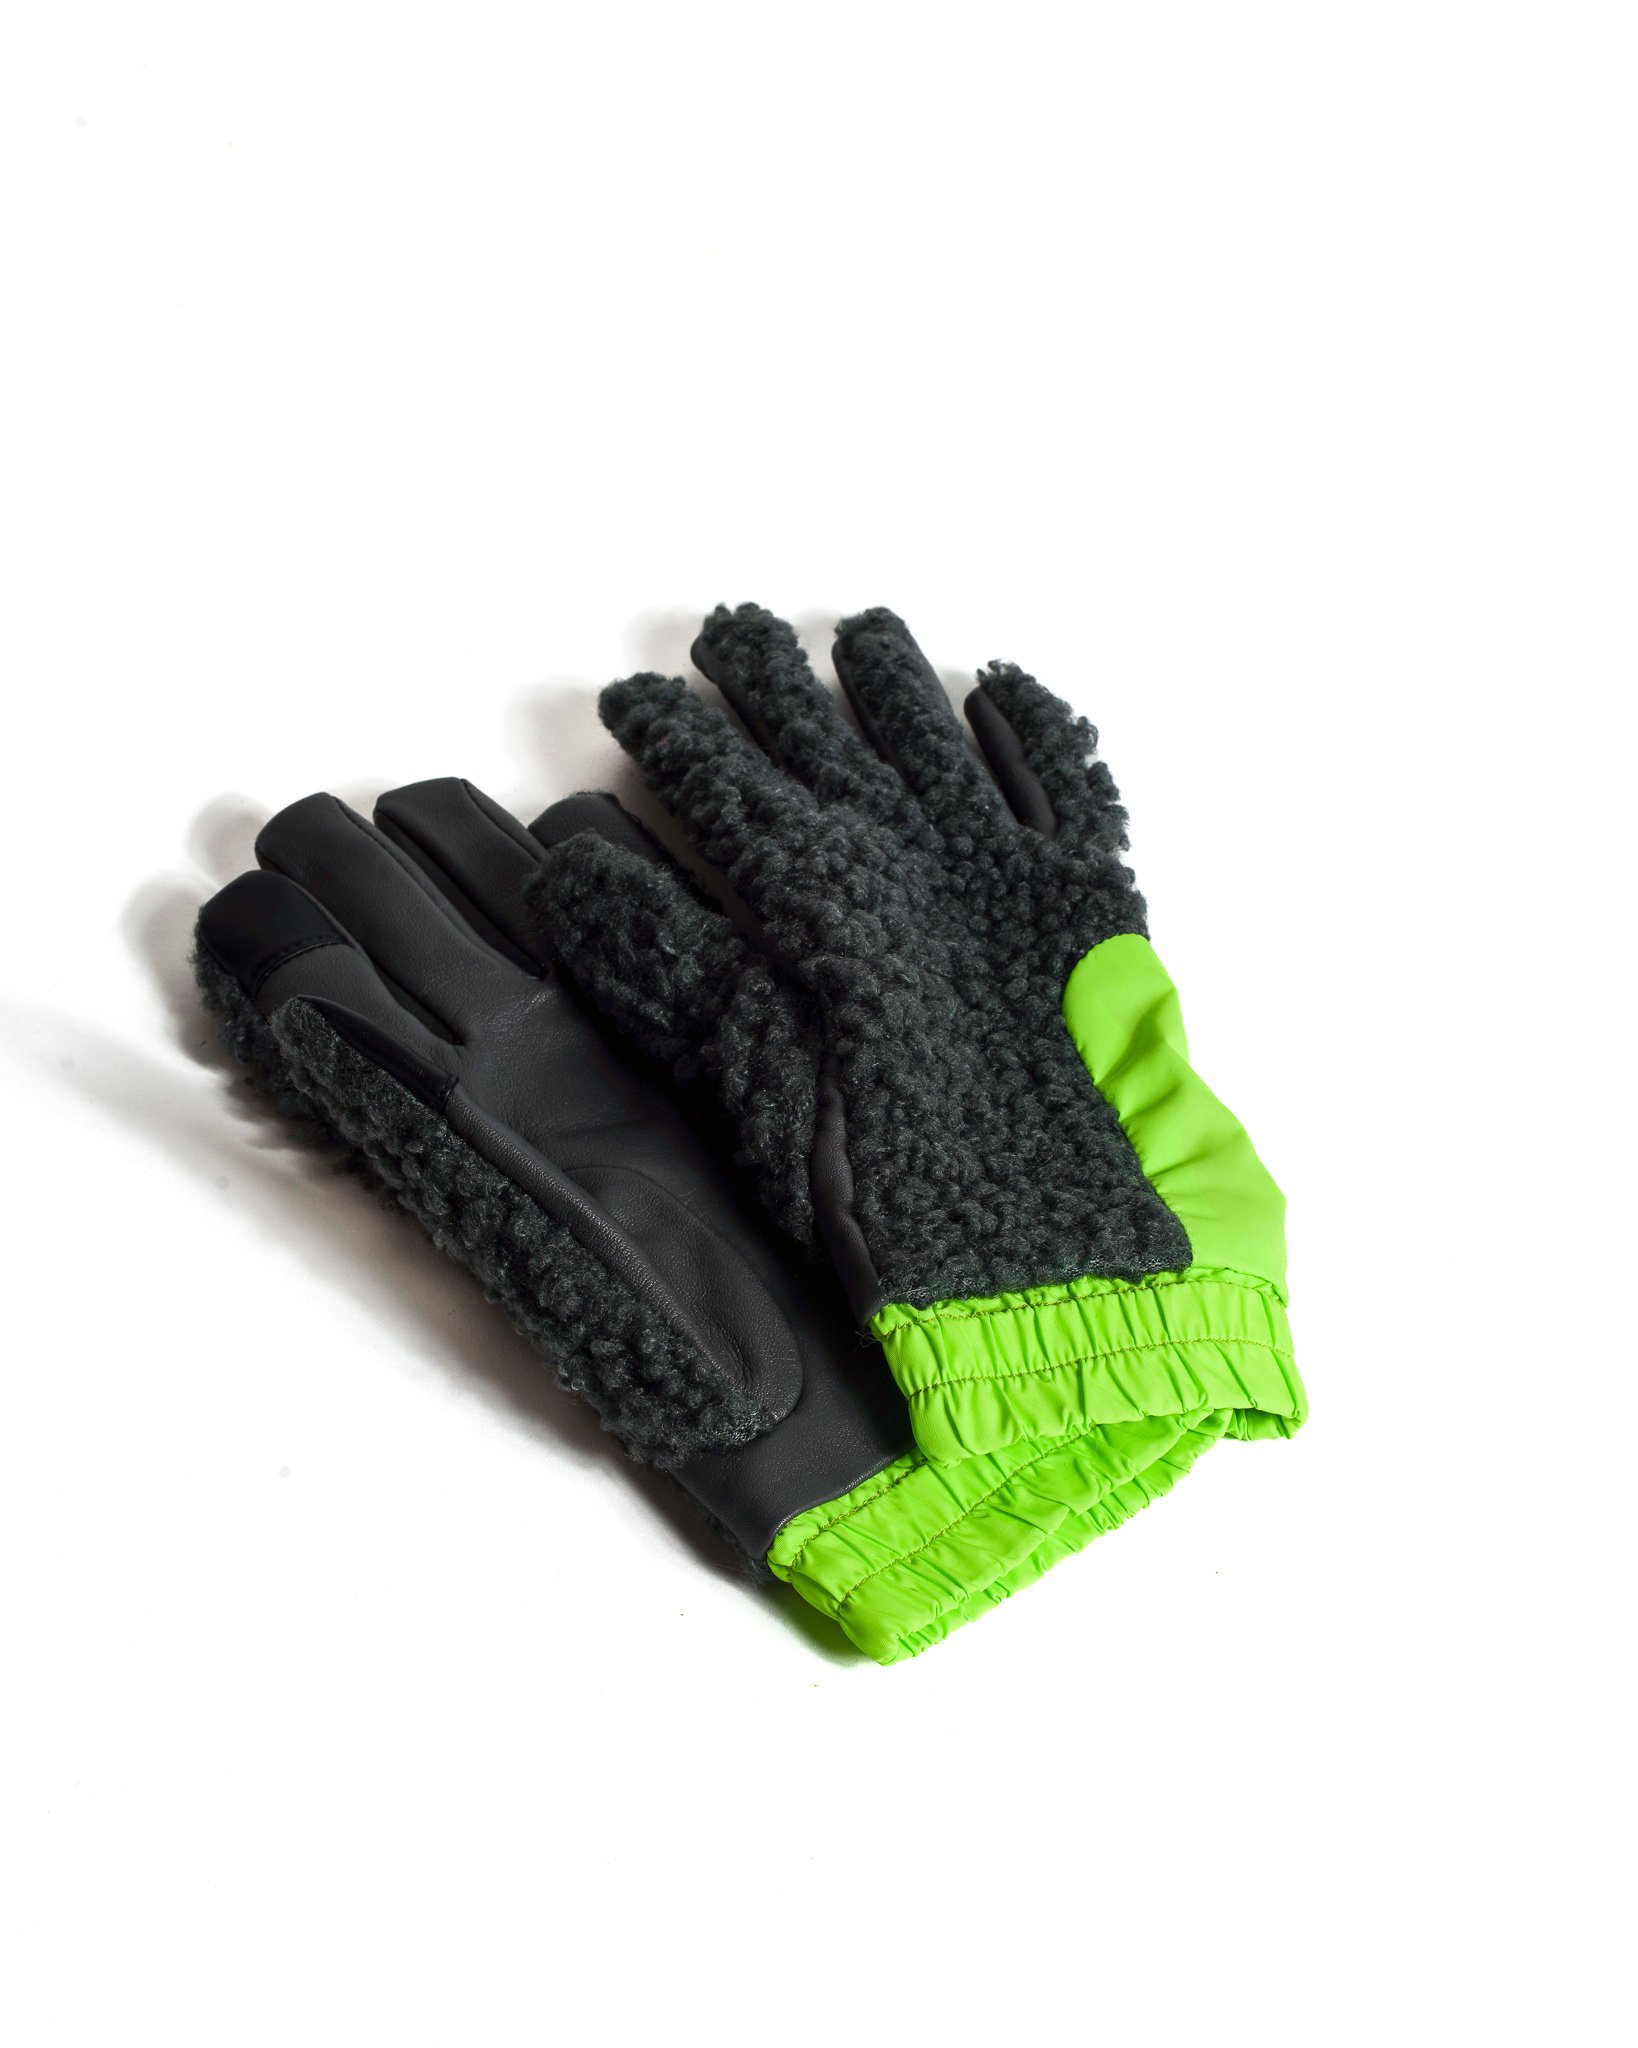 Asrai Garden - Aristide Fleece Gloves - Lime and Charcoal - asrai